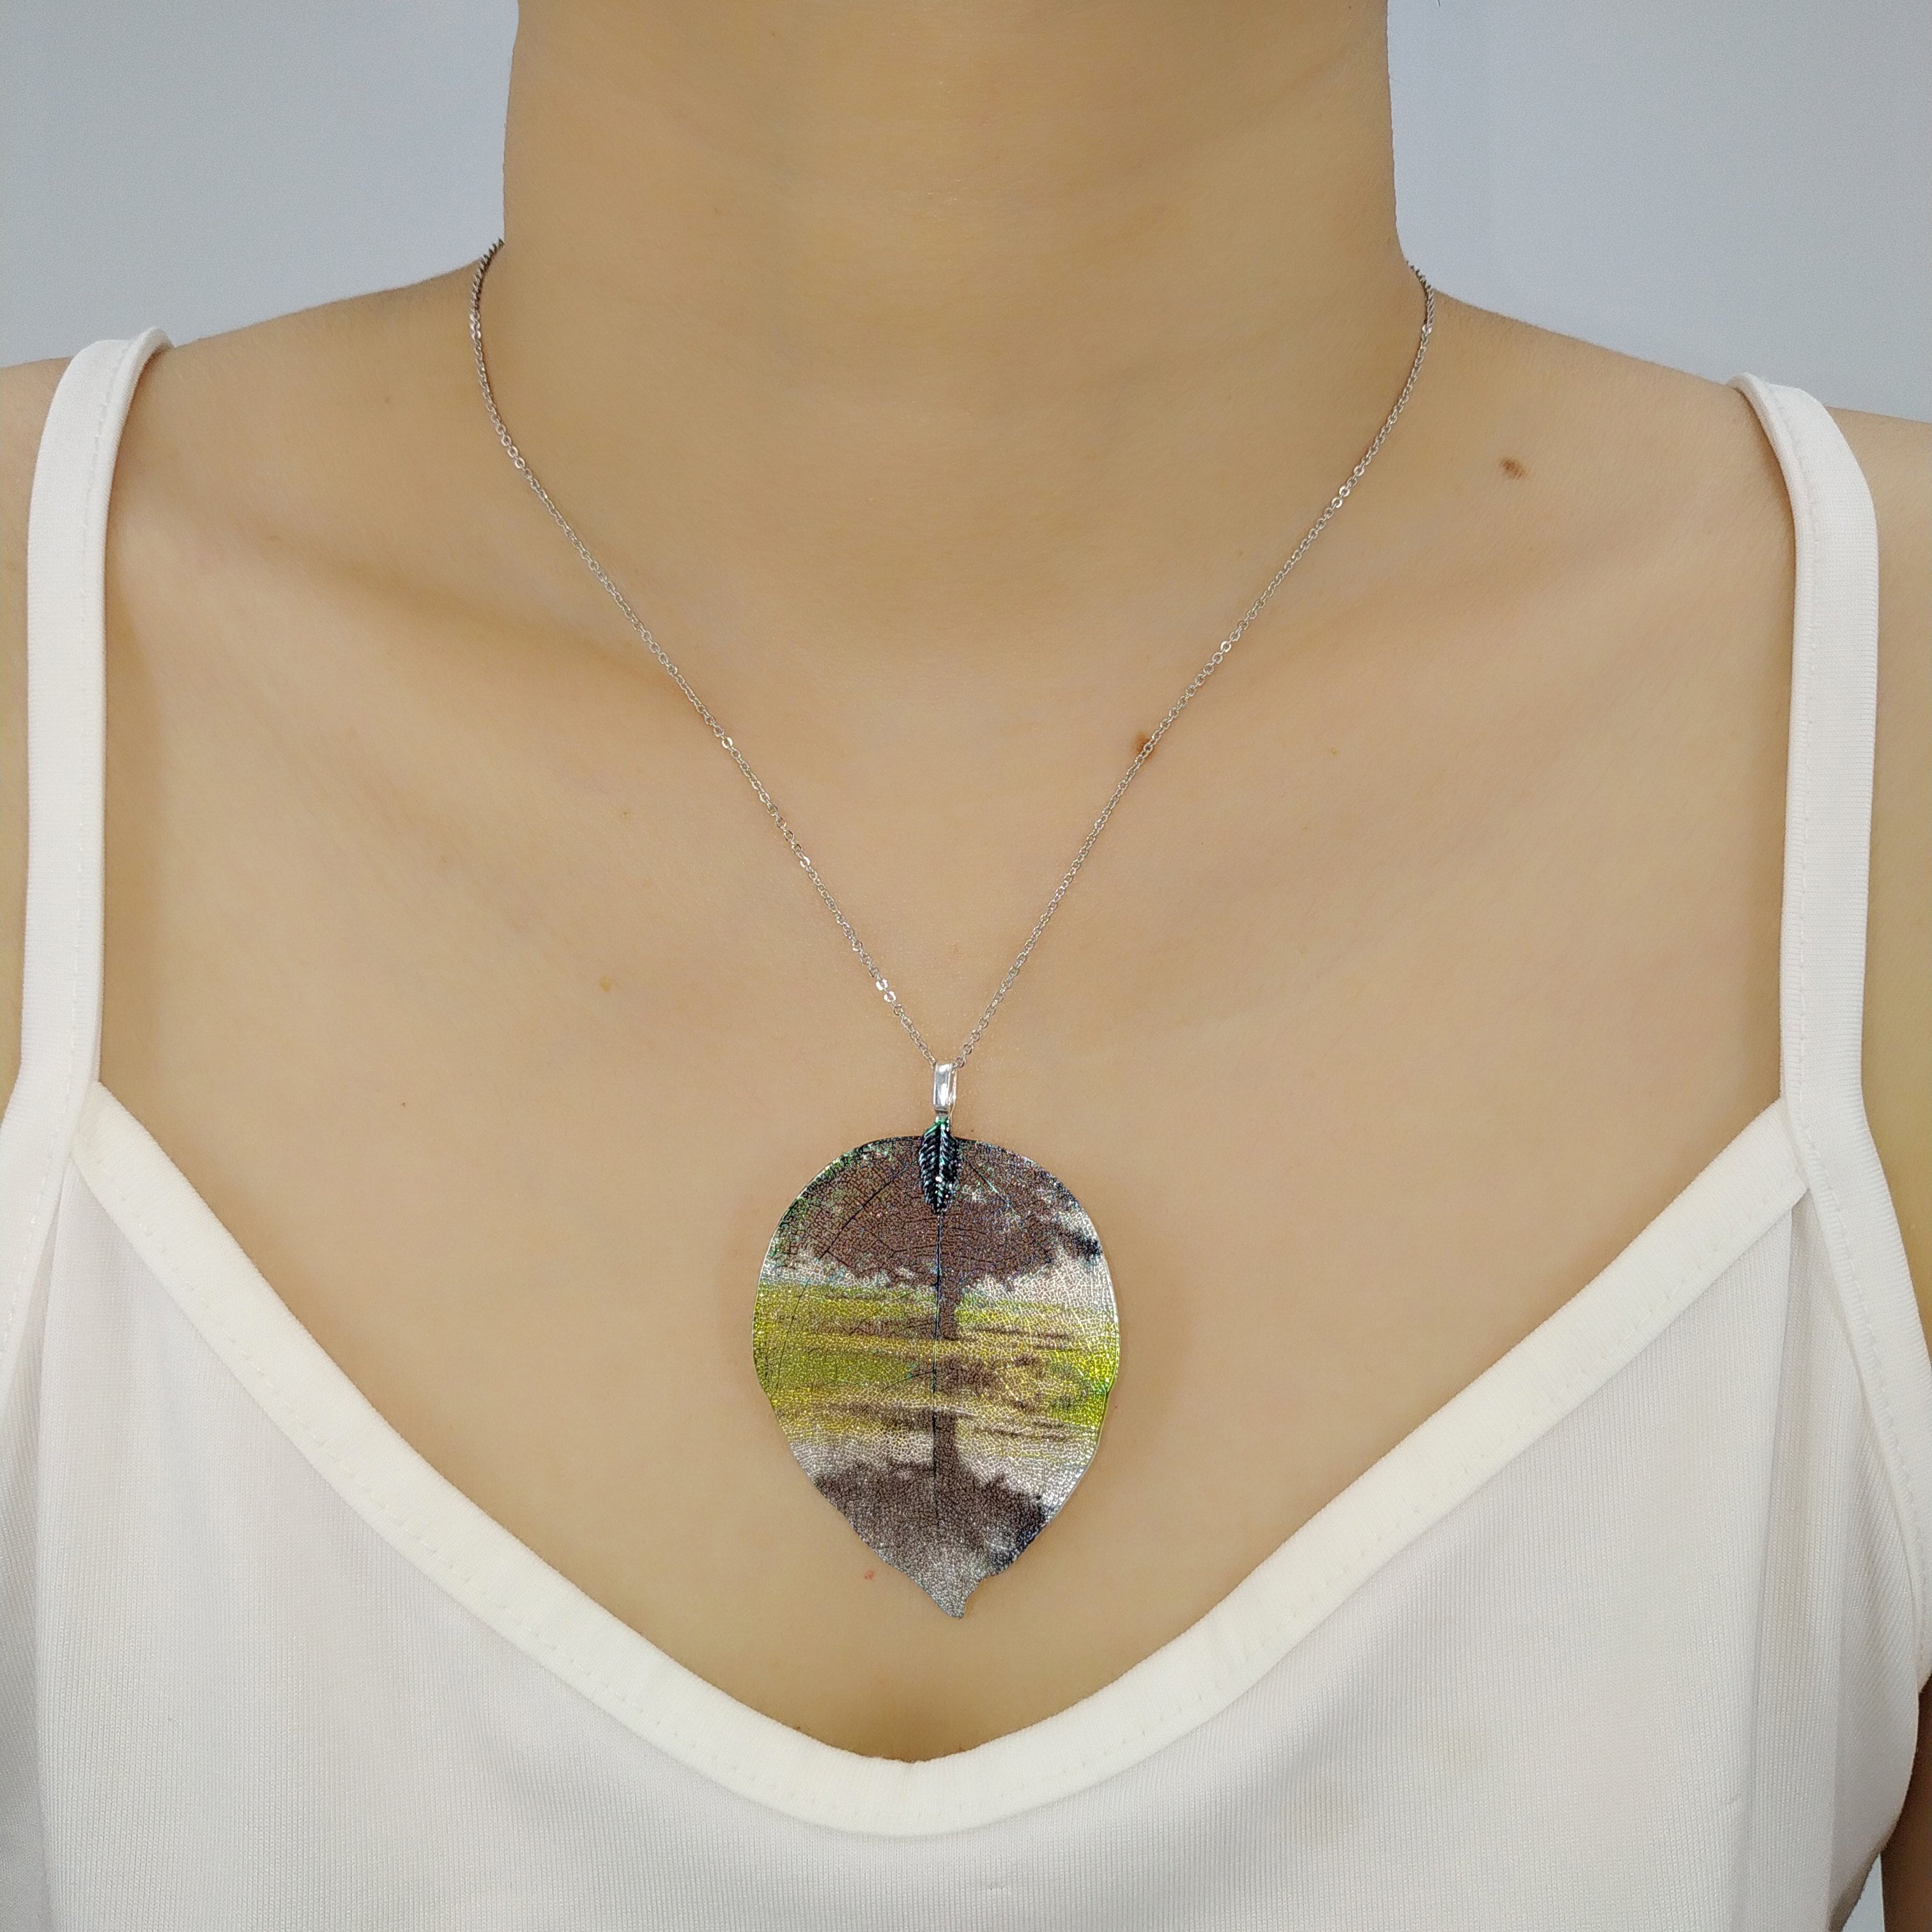 Landscape - Real Leaf Pendant Necklace